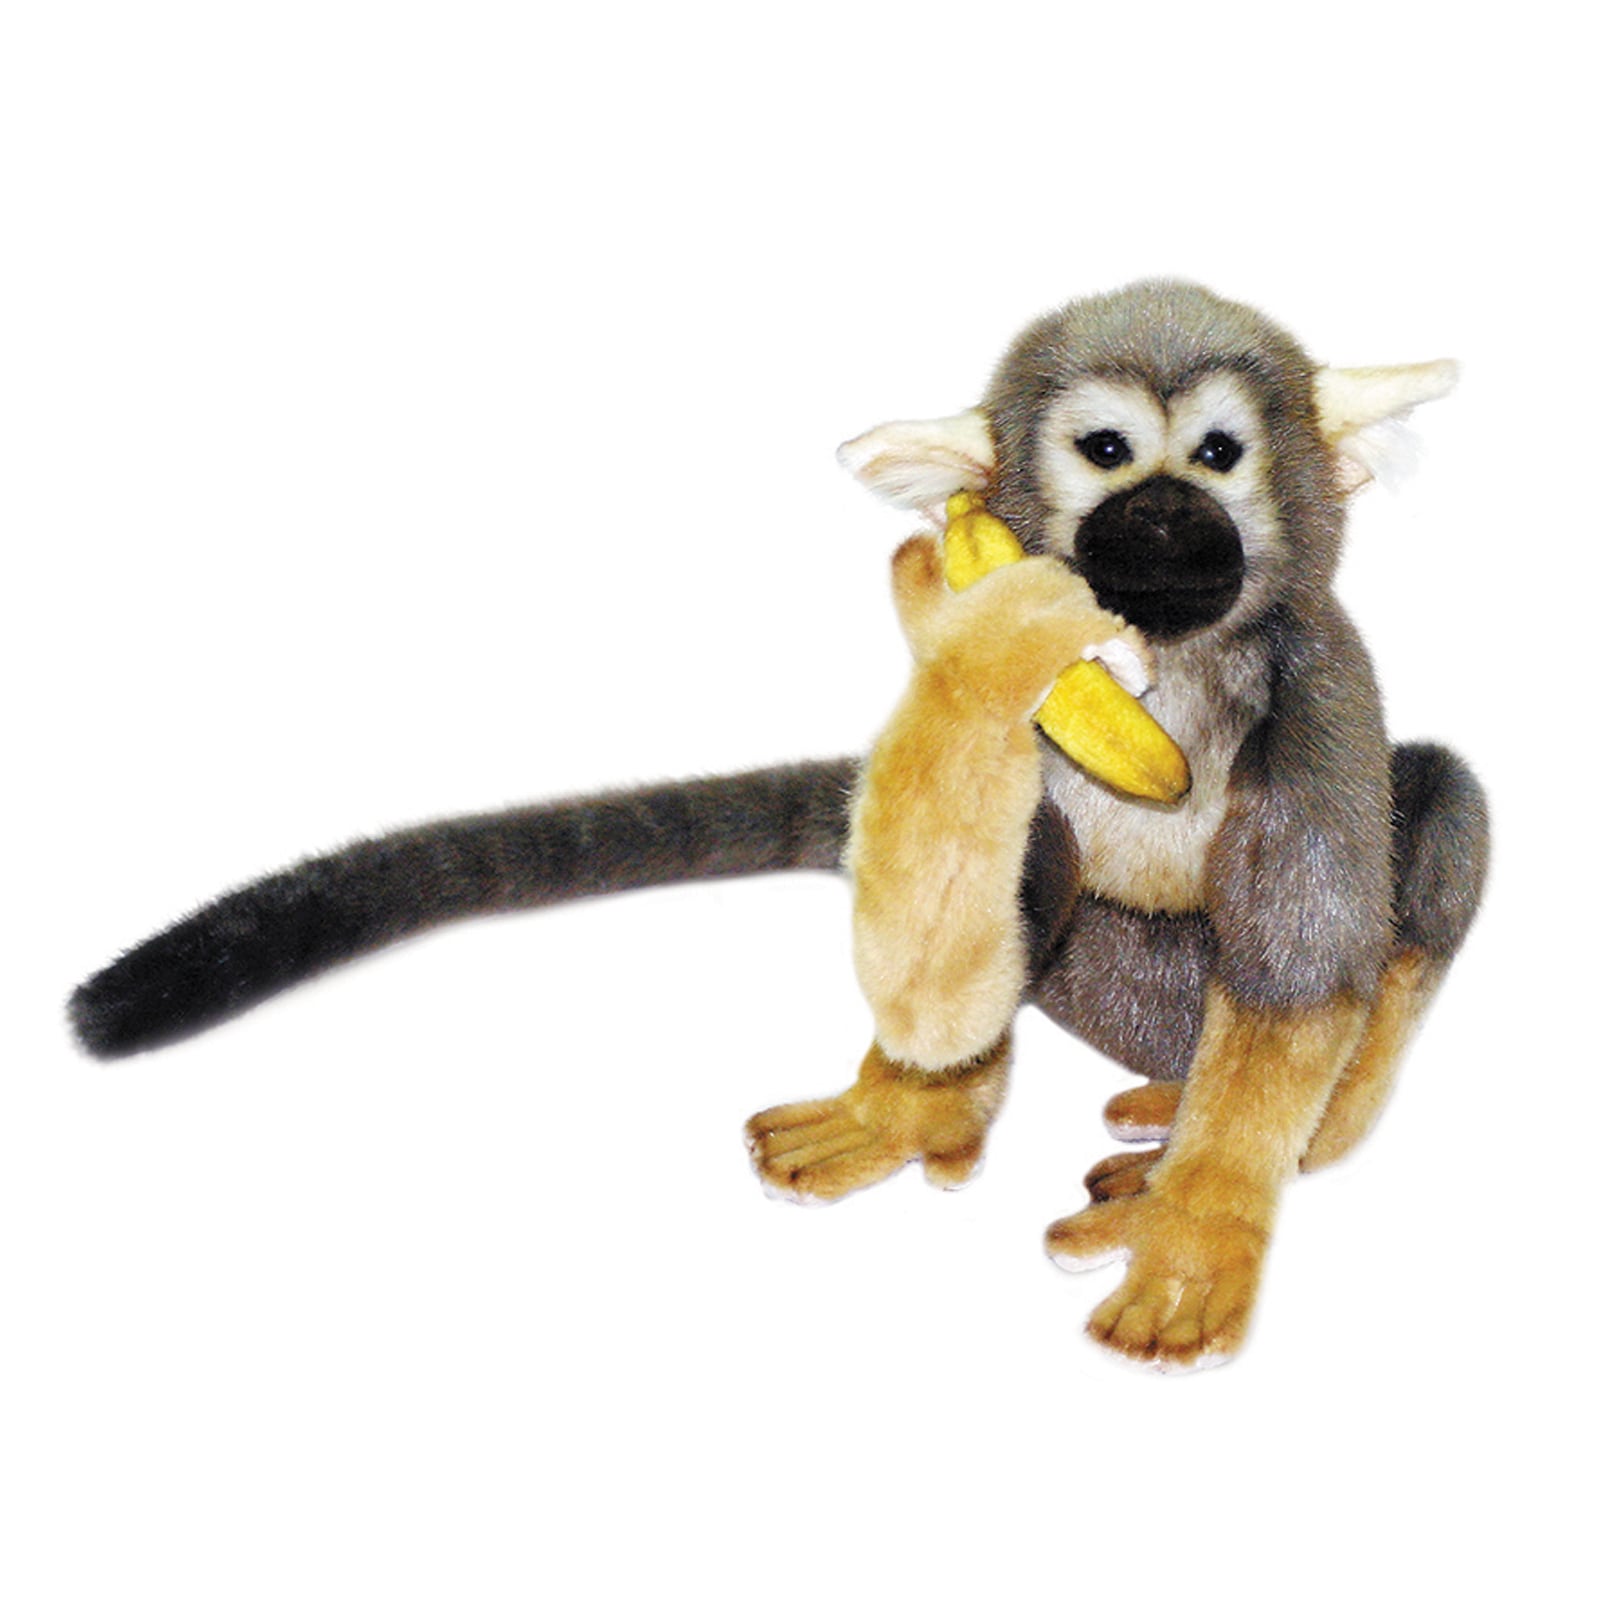 monkey stuffed animal with banana